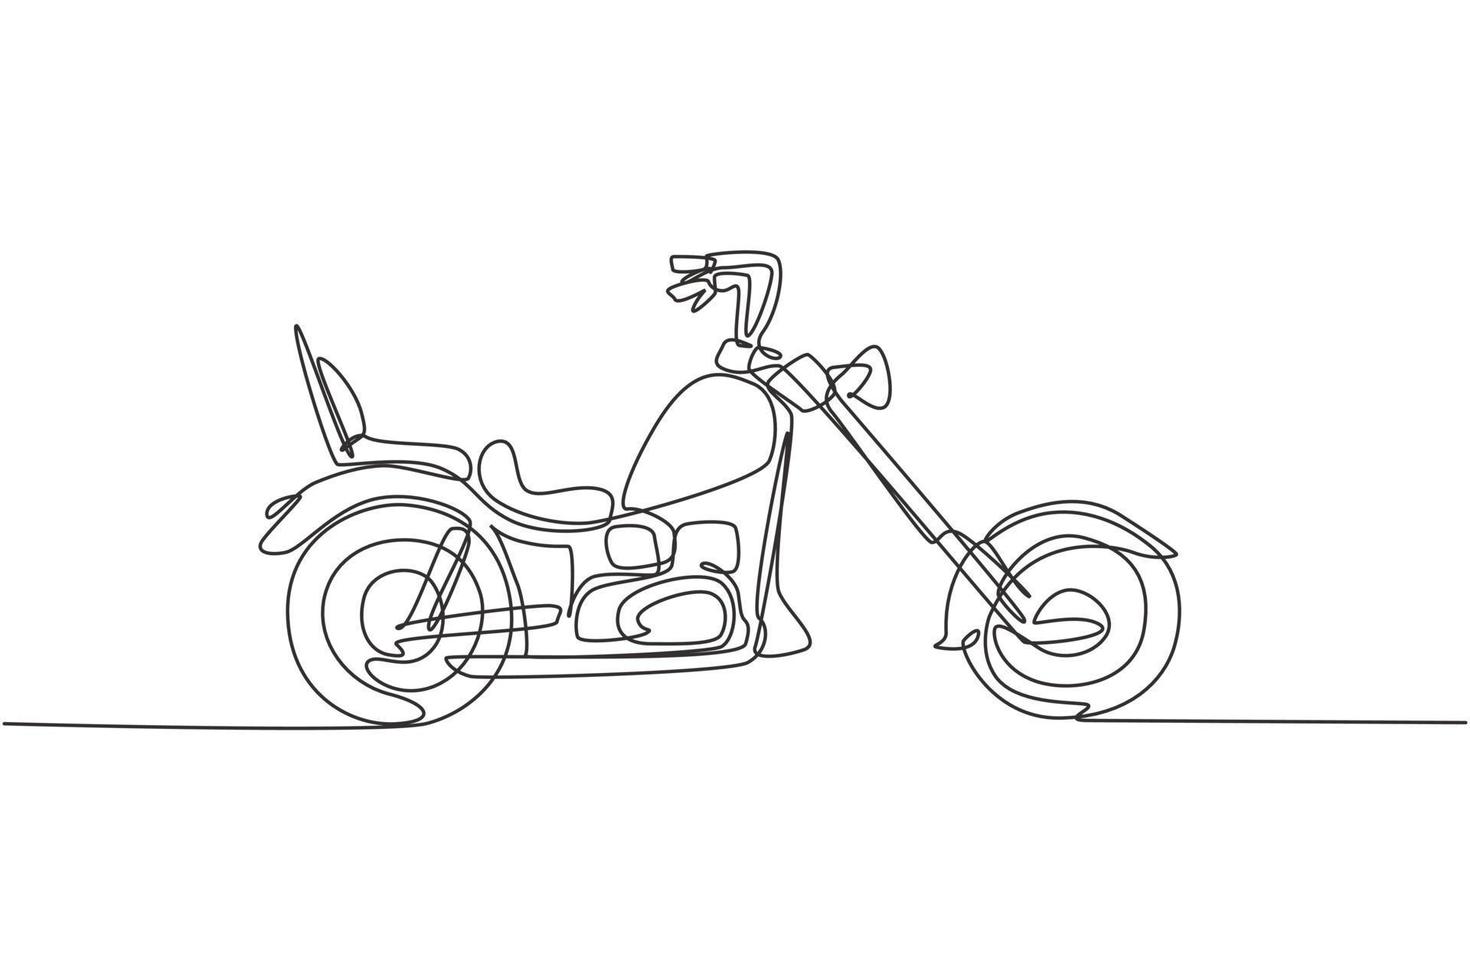 un dibujo de una sola línea de la vieja motocicleta chopper retro vintage. Ilustración de vector de diseño de dibujo gráfico de línea continua concepto de transporte de moto vintage